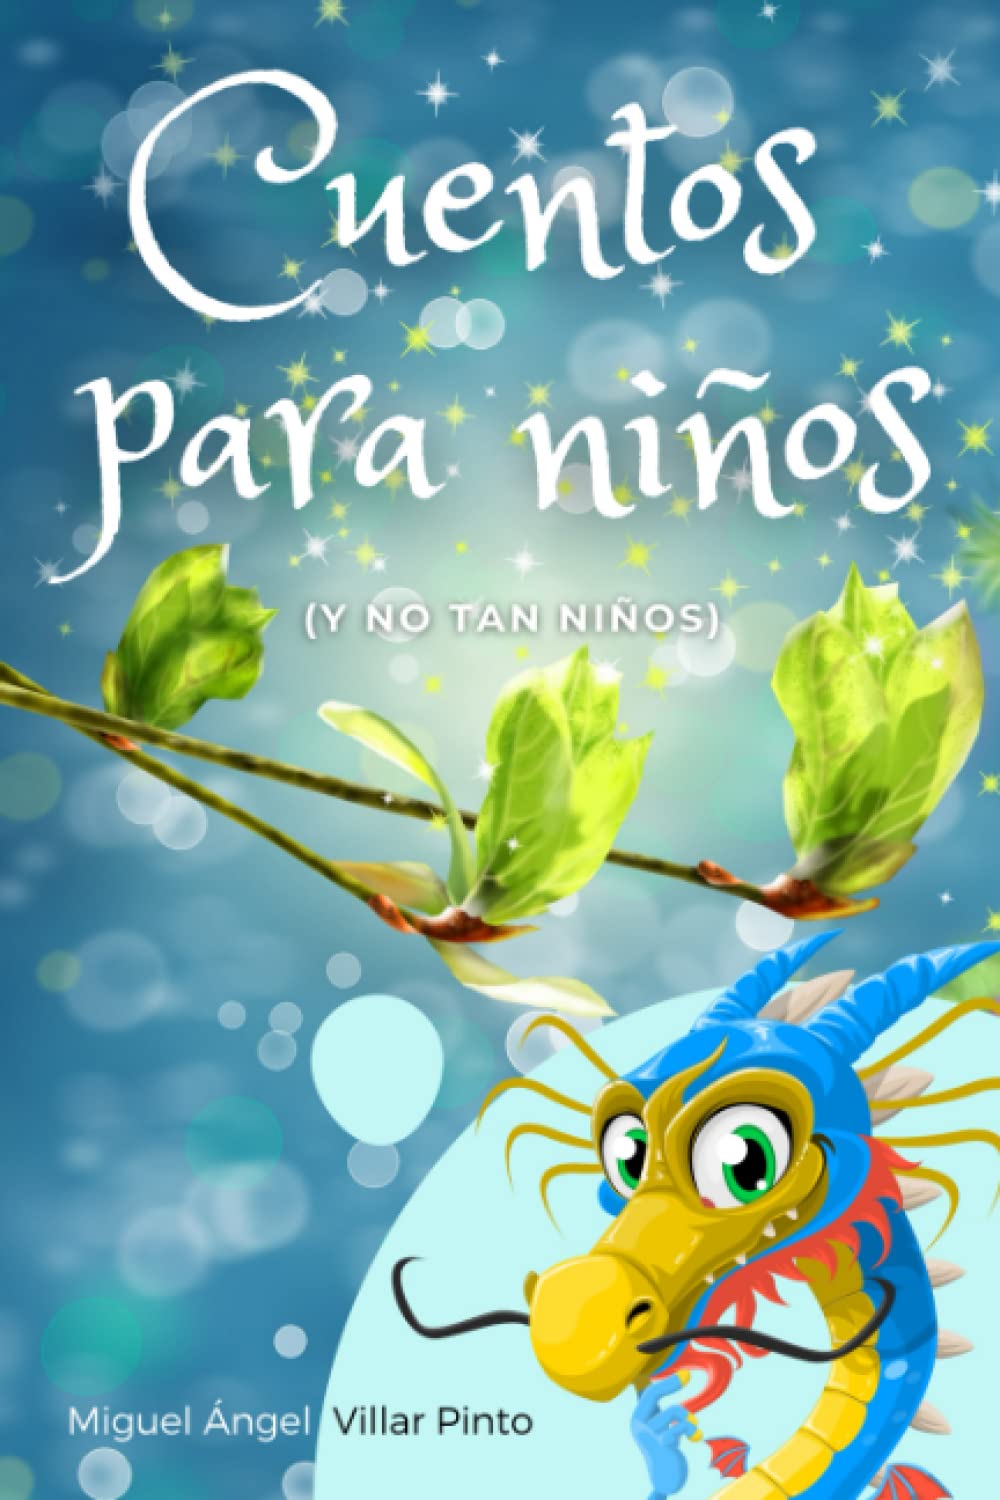 Cuentos para niños (y no tan niños) (Cuentos infantiles) (Spanish Edition)